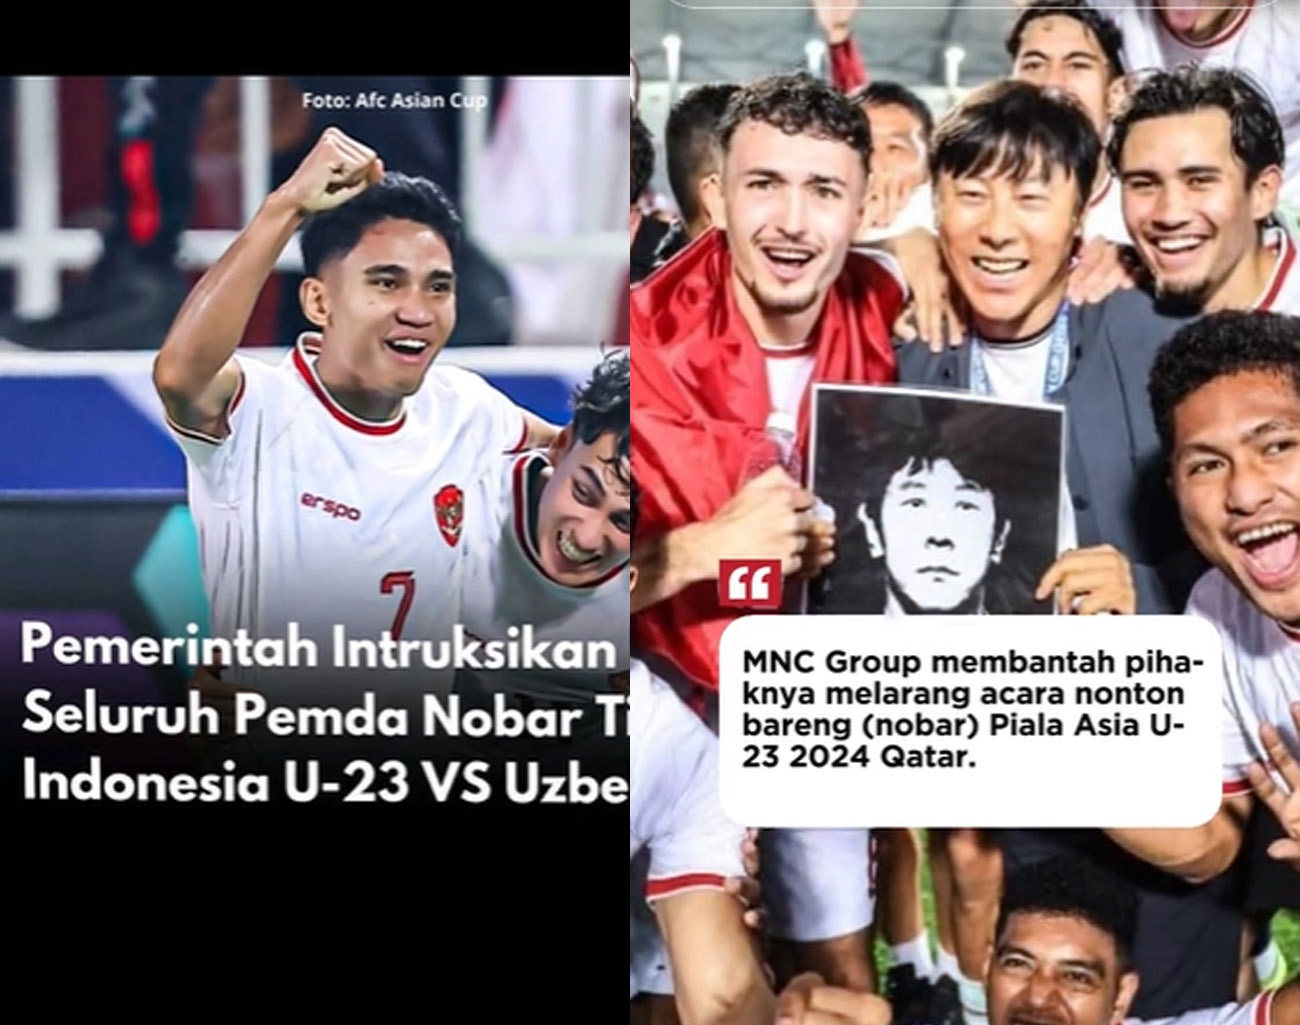 Inilah Link Steaming Nobar Piala Asia U-23 2024 Lewat RCI, Semifinal Sepak Bola Indonesia vs Uzbekistan